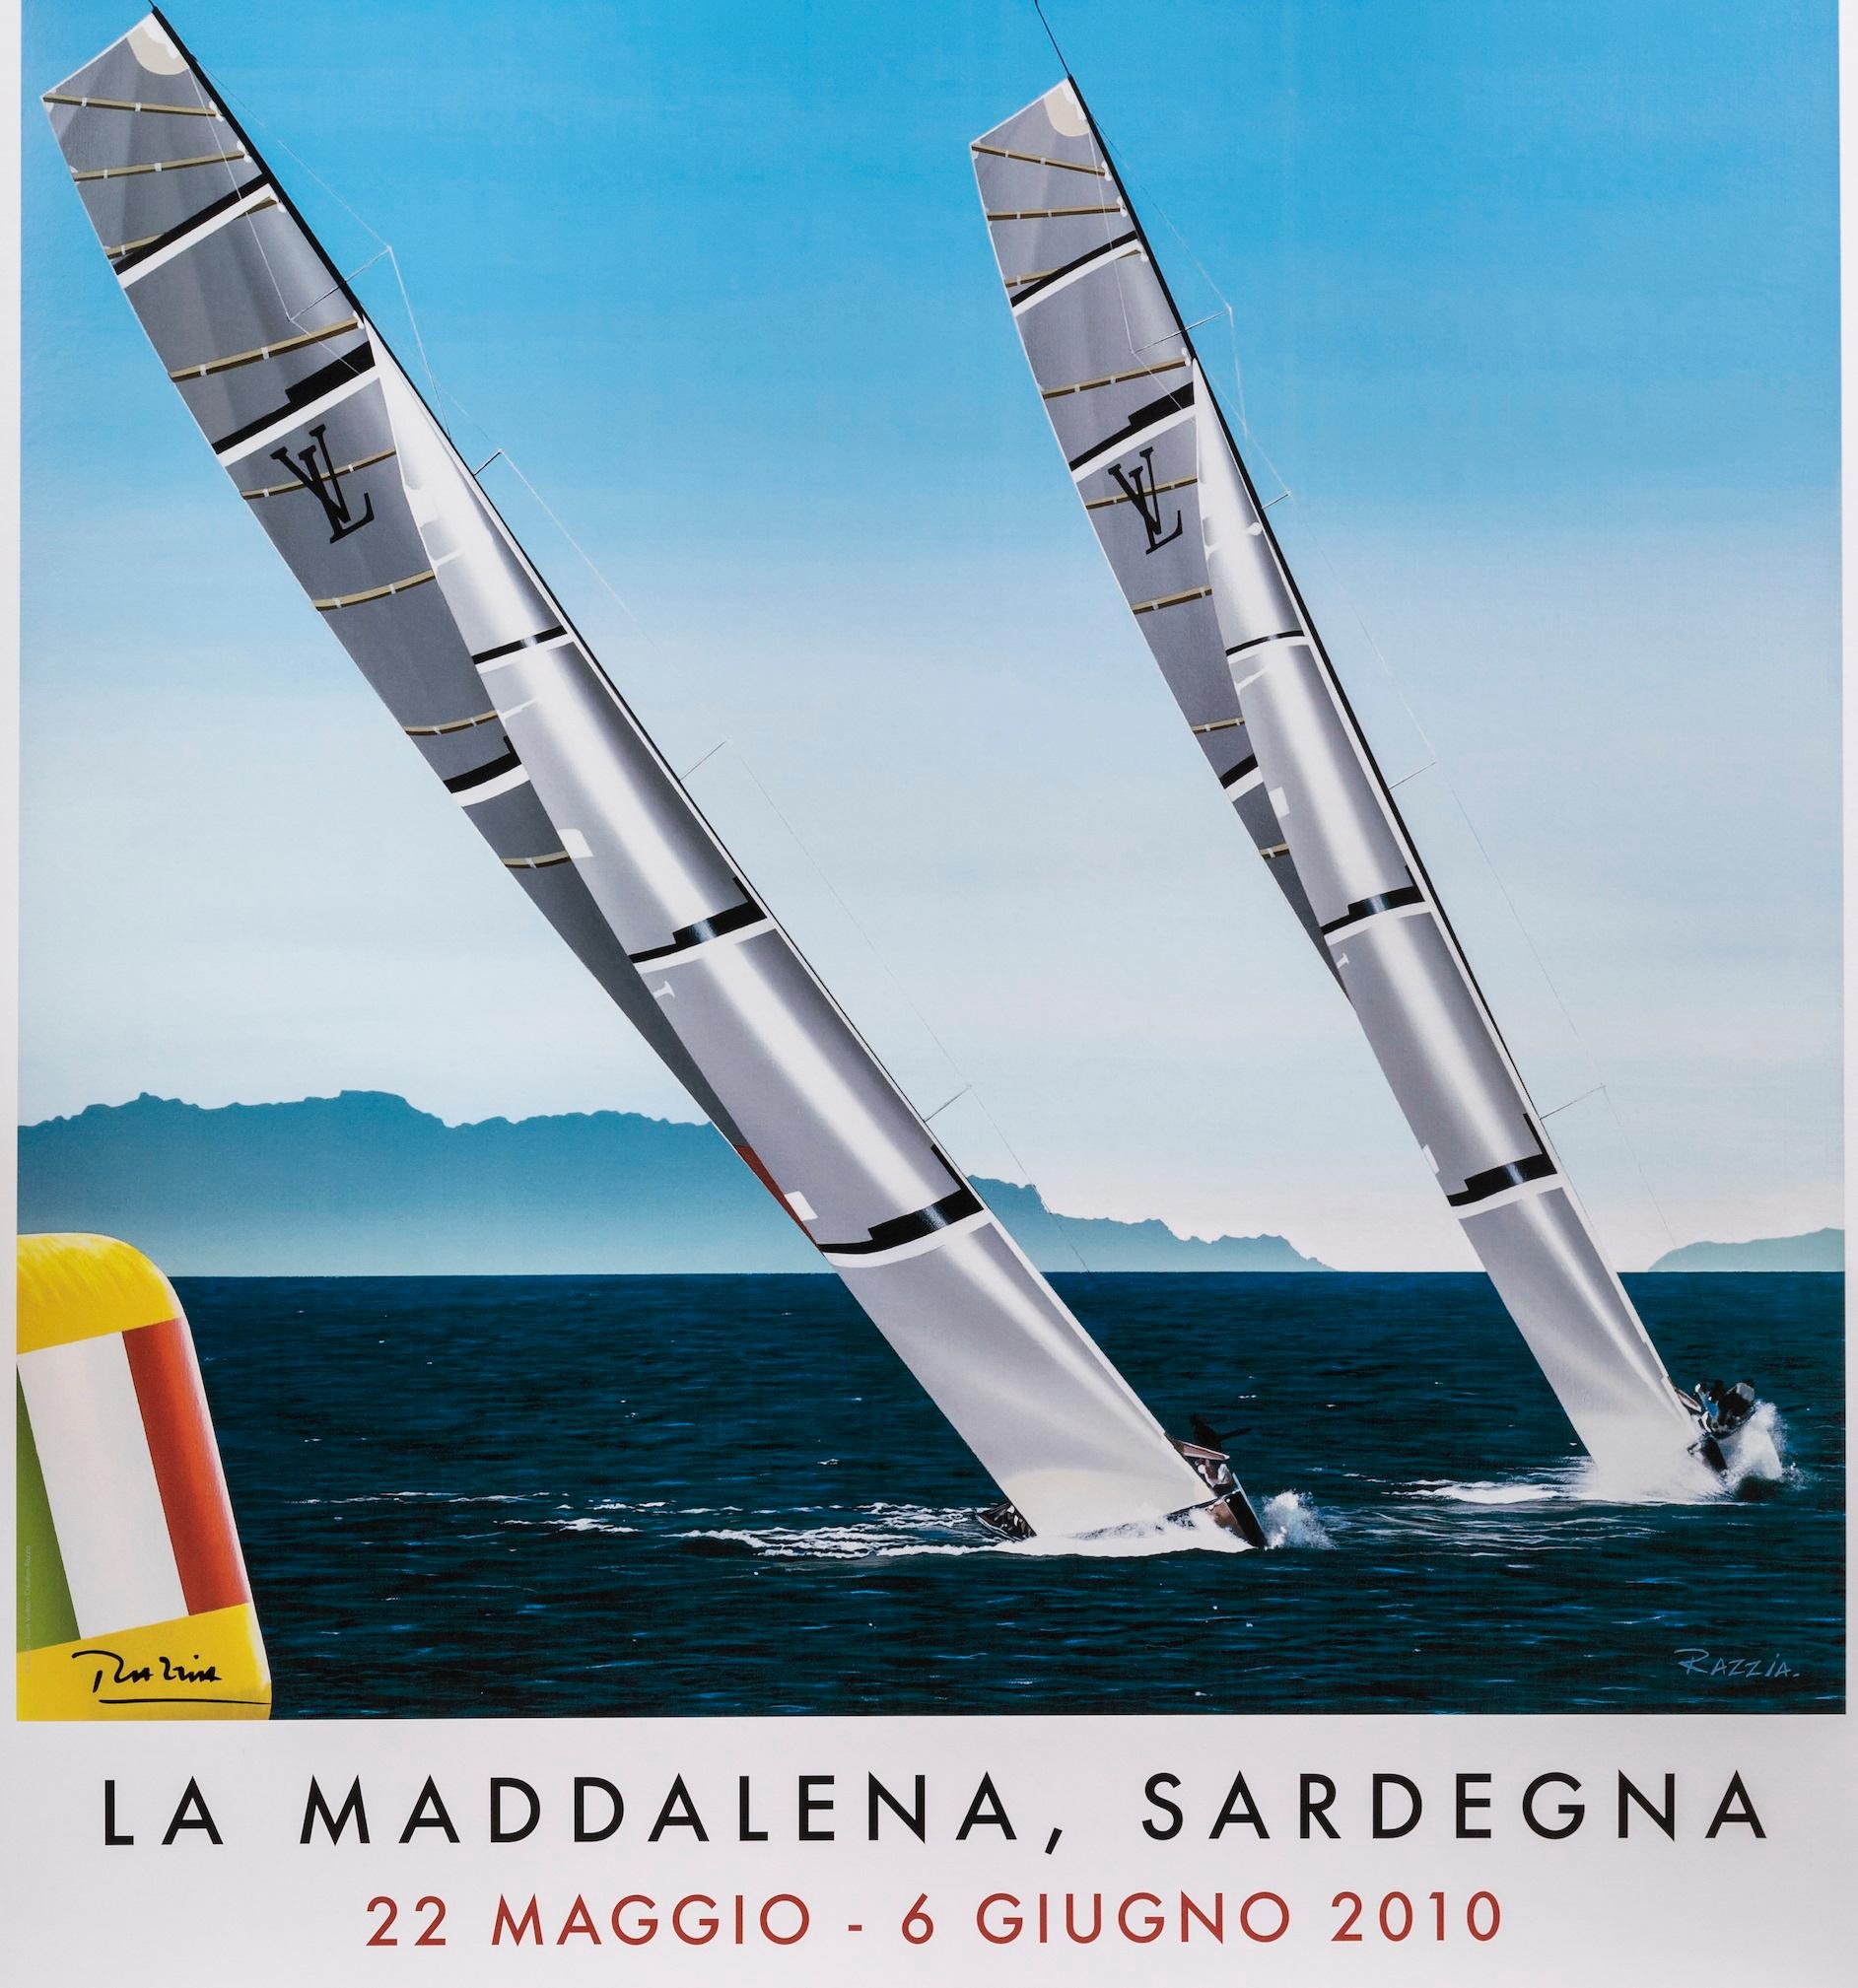 Razzia, affiche originale de Louis Vuitton, La Maddalena, bateau à voile, 2010

Artistics : Razzia
Titre : Trophée Louis Vuitton La Maddalena Sardegna
Date : 2010
Taille (l x h) : 40.8 x 55.5 in / 103.5 x 141 cm
Matériaux et techniques :